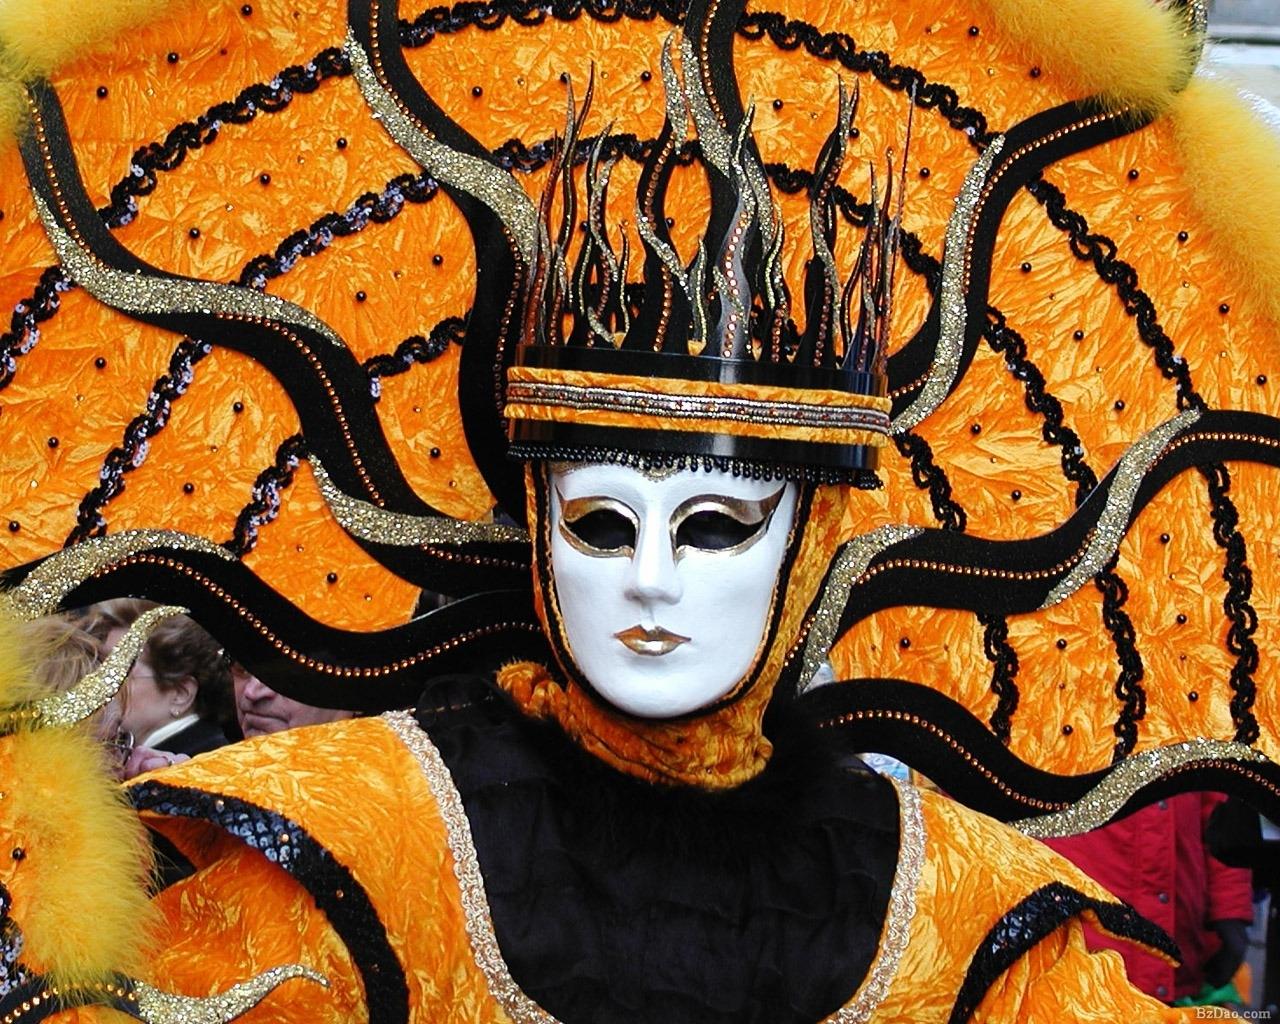 Fondos de Pantalla Día festivos Carnaval y disfraces descargar imagenes